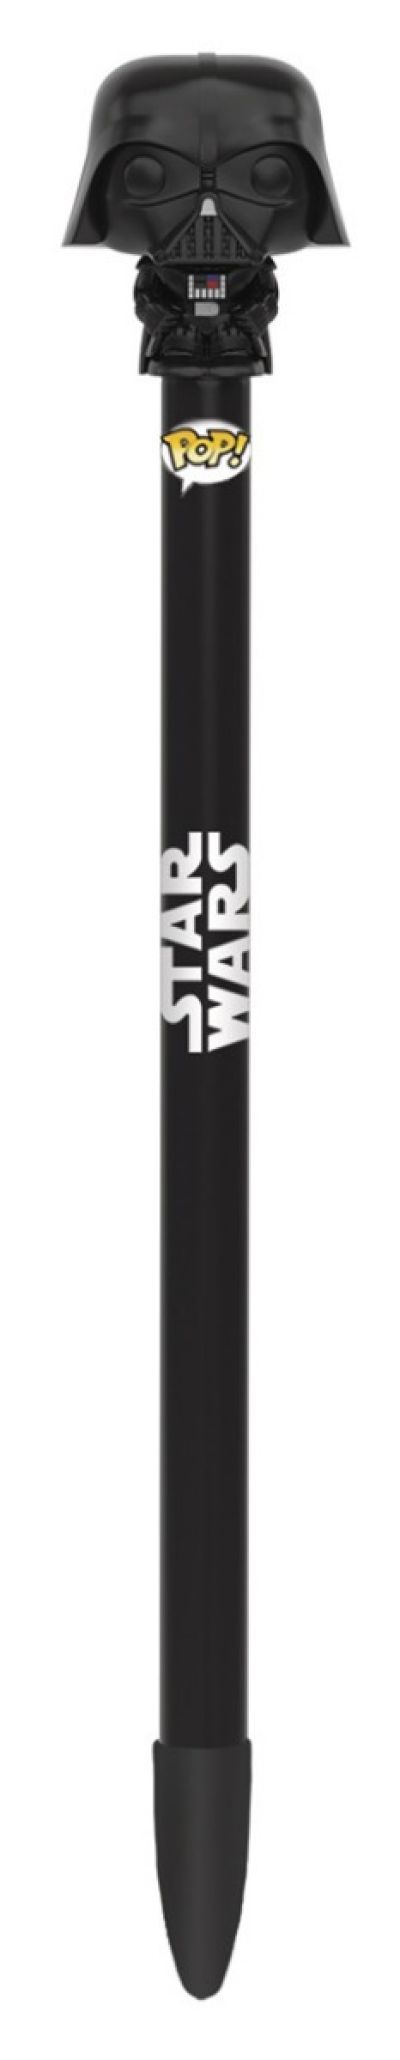 Funko Pop Pens Star Wars 7701 Darth Vader